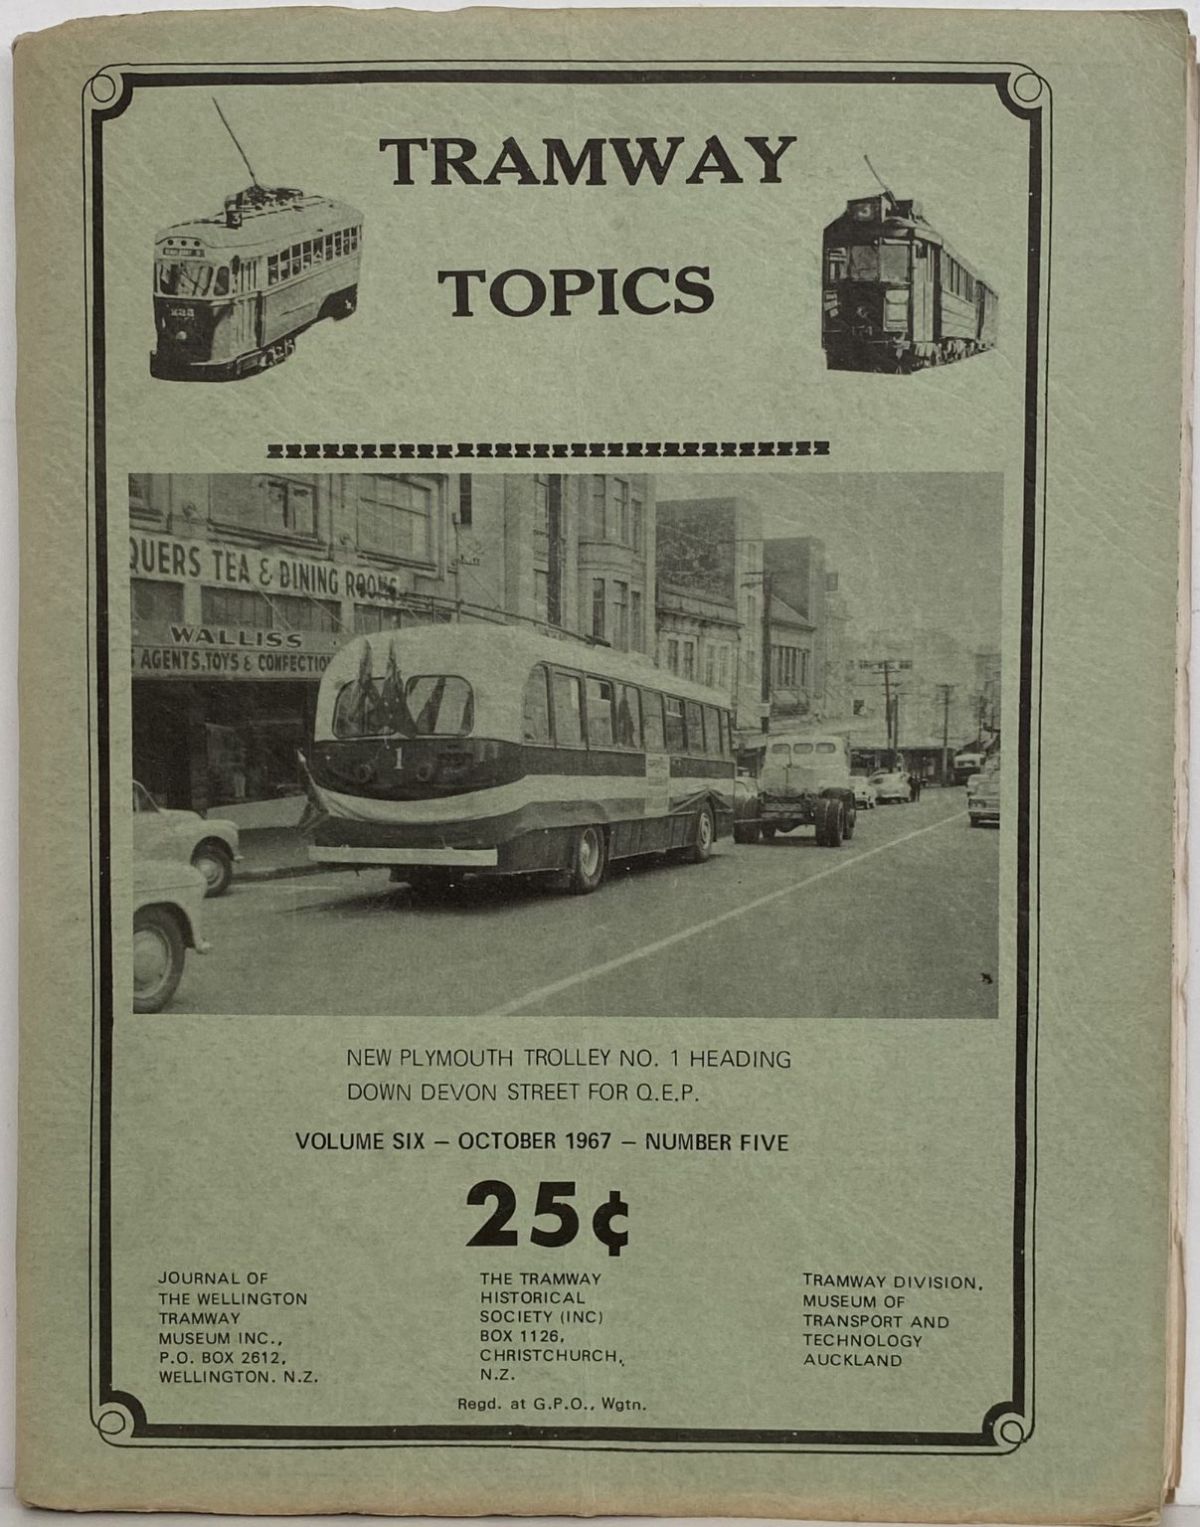 TRAMWAY TOPICS Vol 6, No 5, October 1967